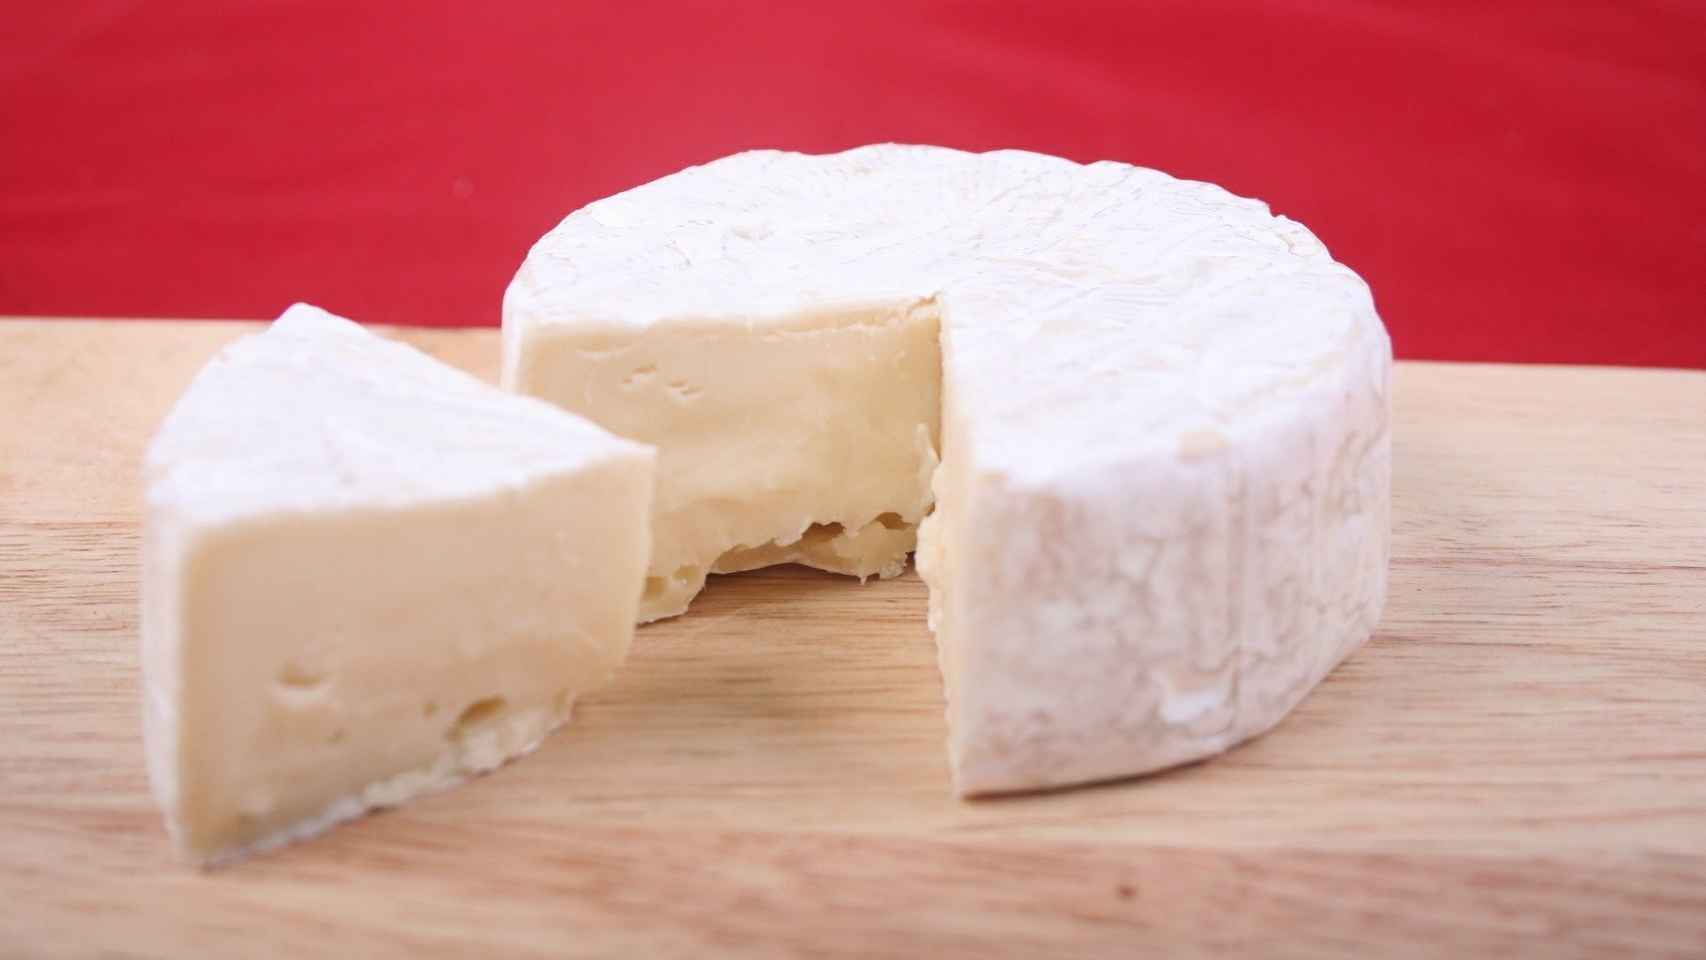 Alerta alimentaria en España: retiran este famoso queso del 'súper' y piden que no se consuma